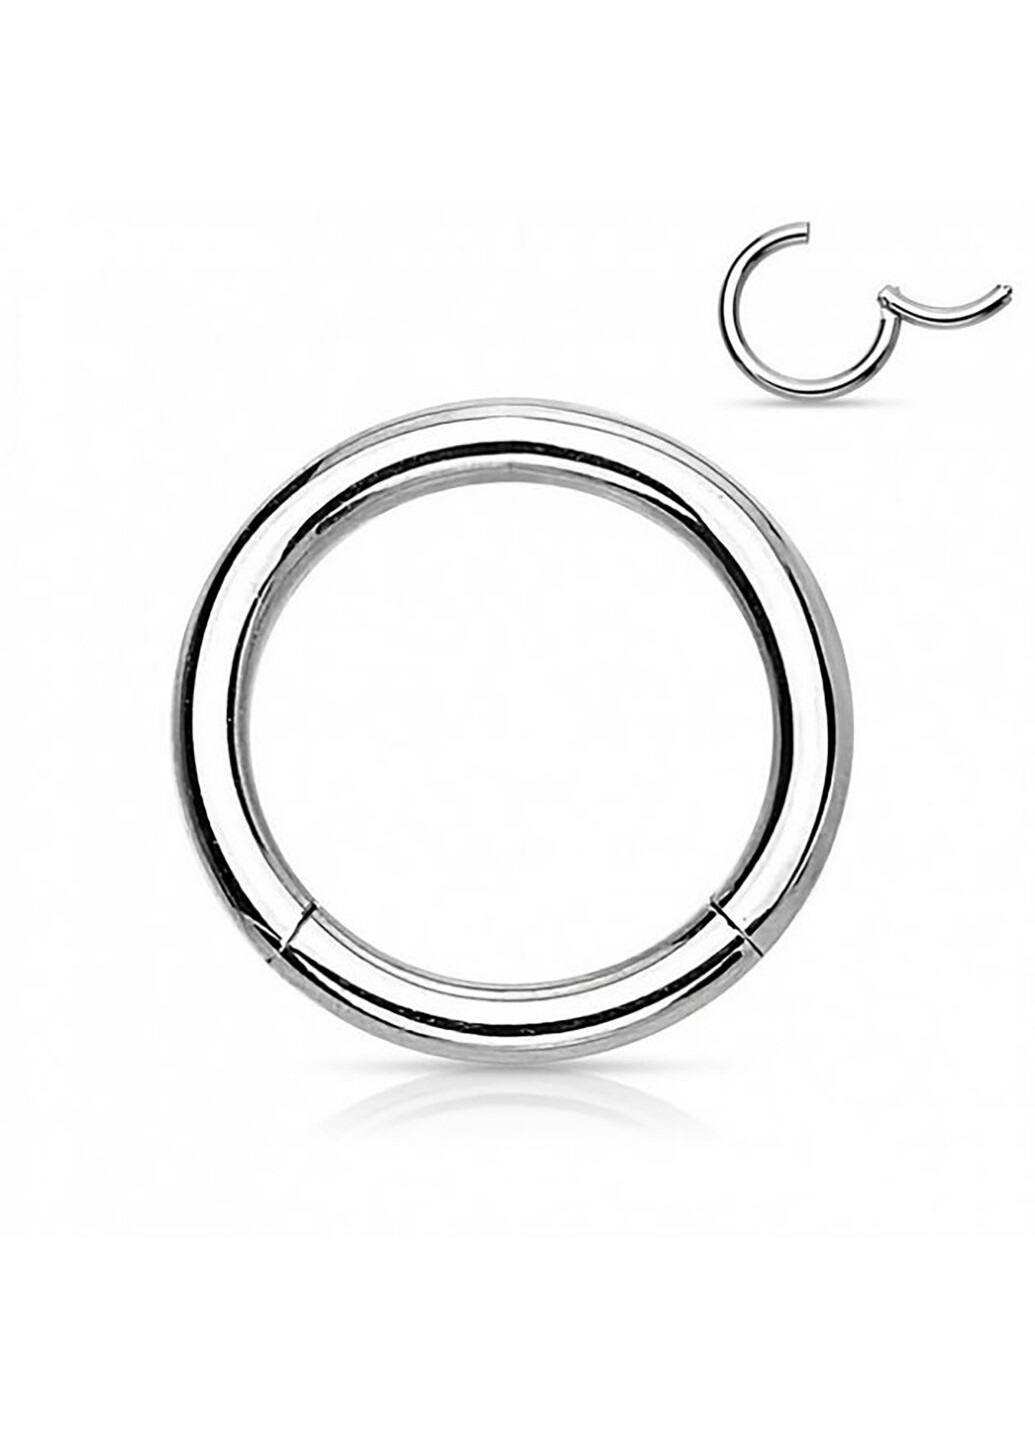 Универсальное кольцо - кликер из стали бренда PiercedFish диаметром 7 мм, толщиной 1 мм Spikes (257898112)